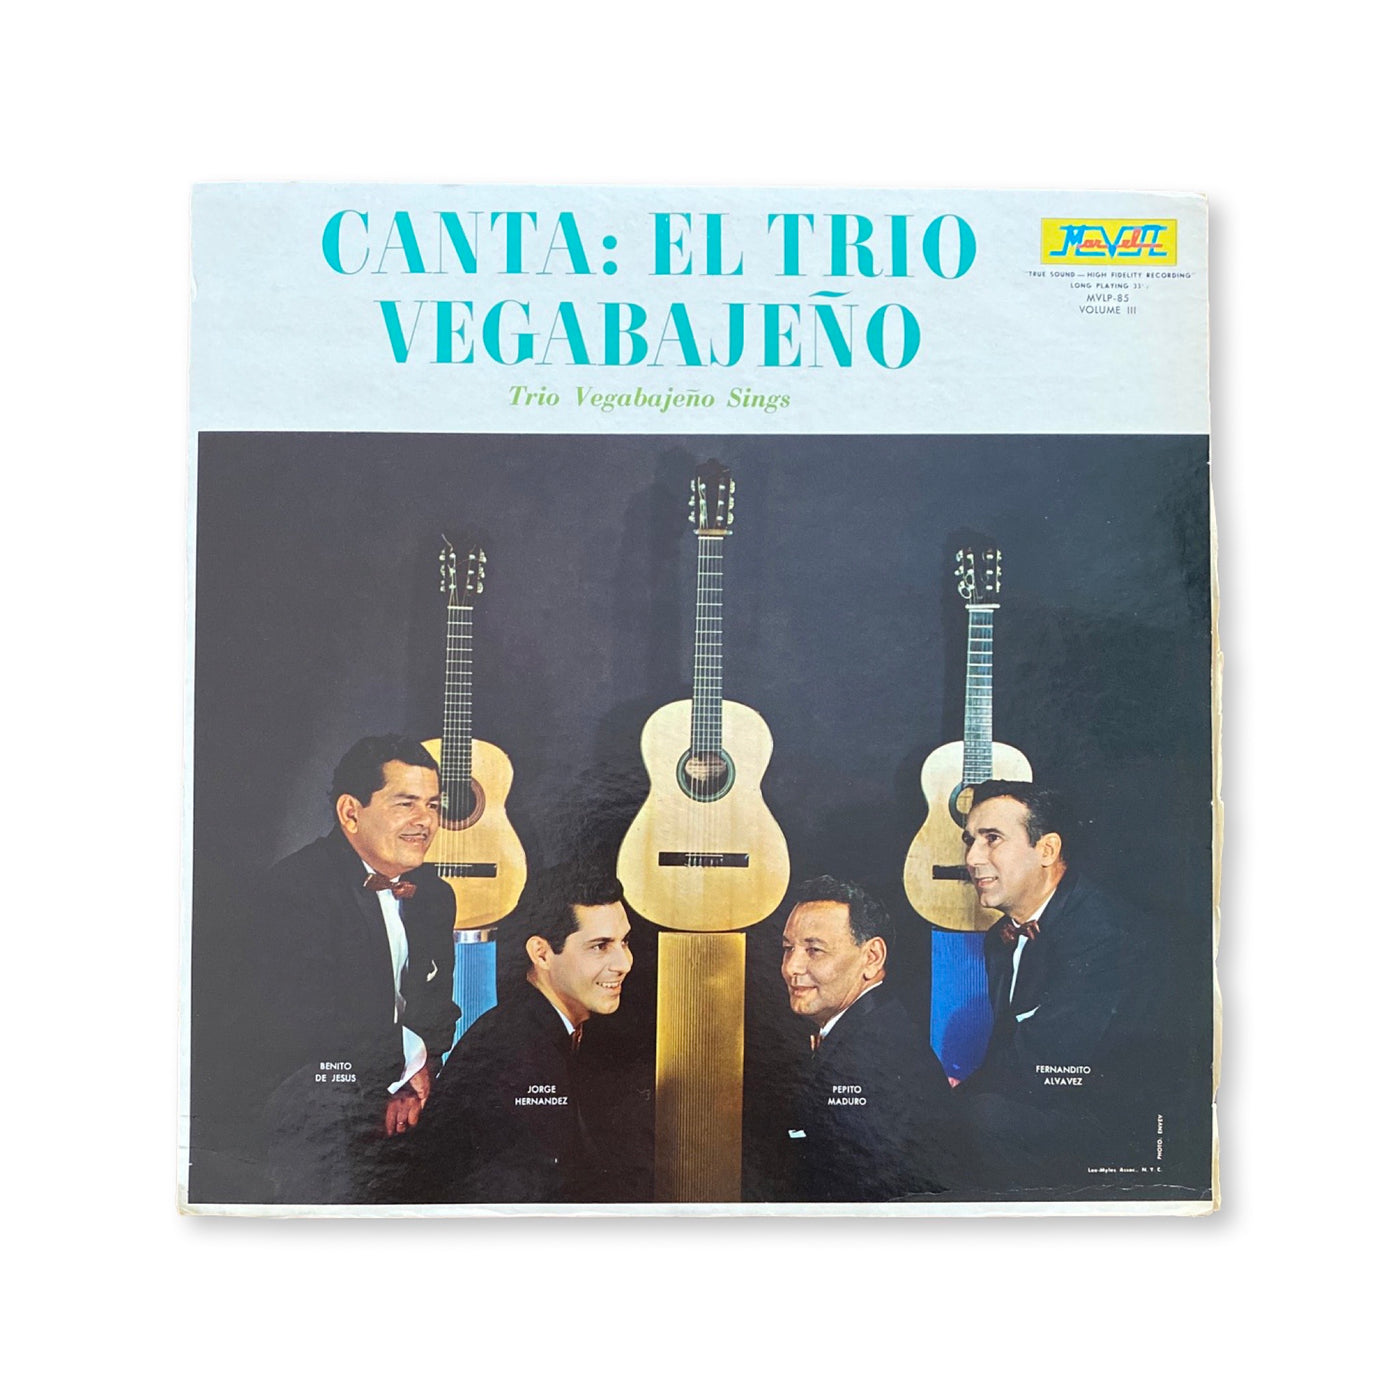 Trio Vegabajeño - Canta: Trio Vegabajeno